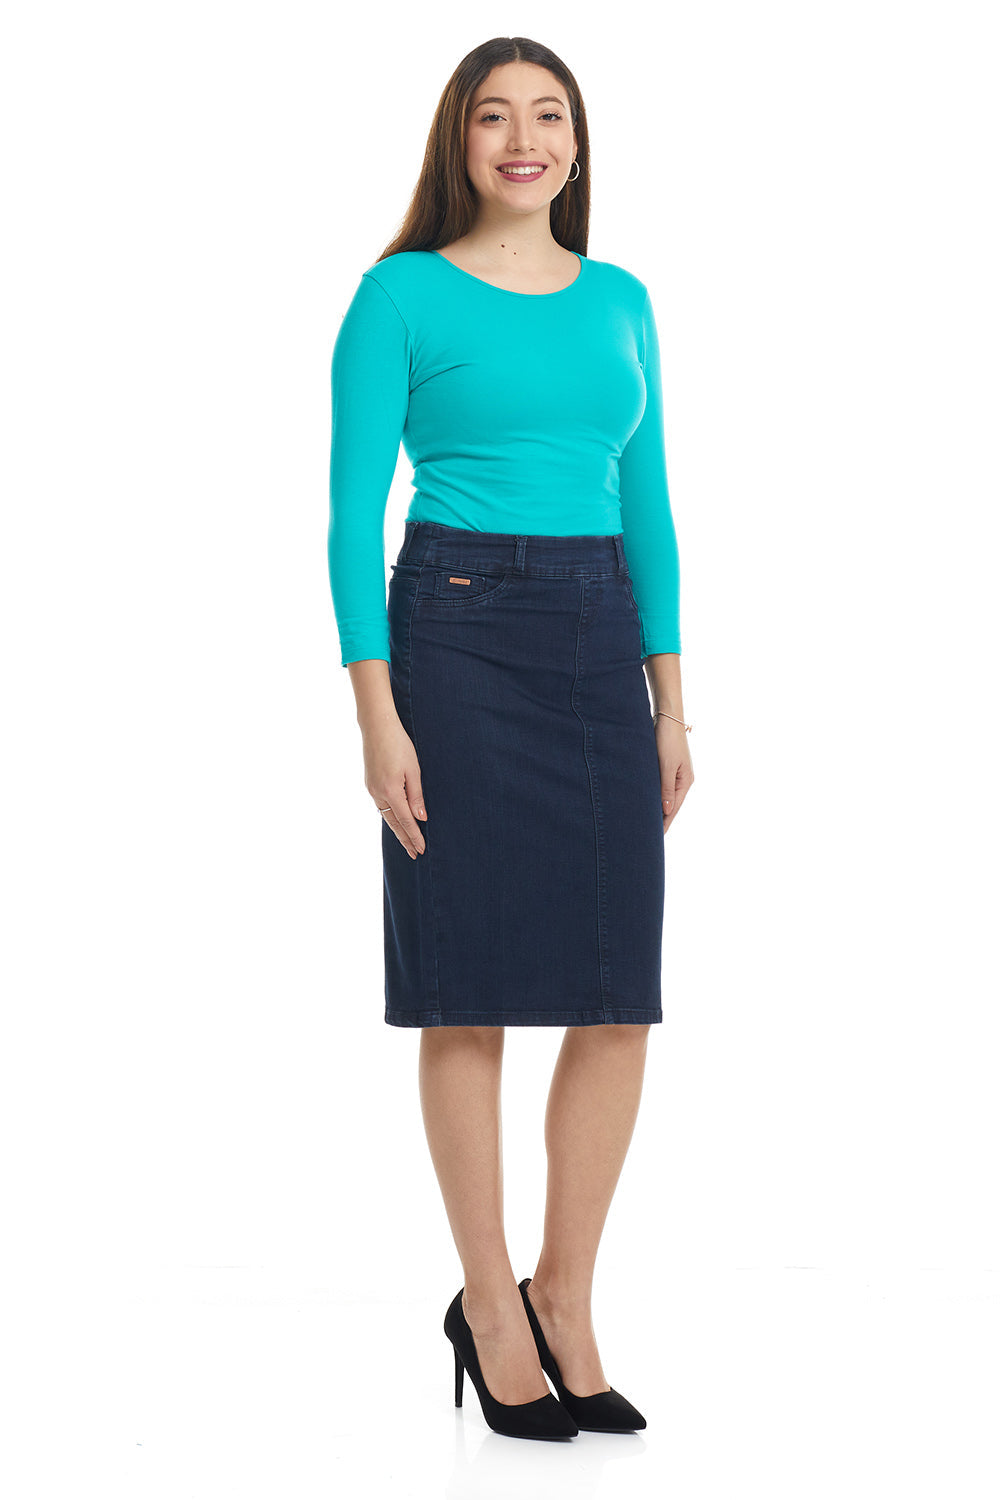 Esteez BOSTON Skirt - Below the knee Straight Jean Skirt for women